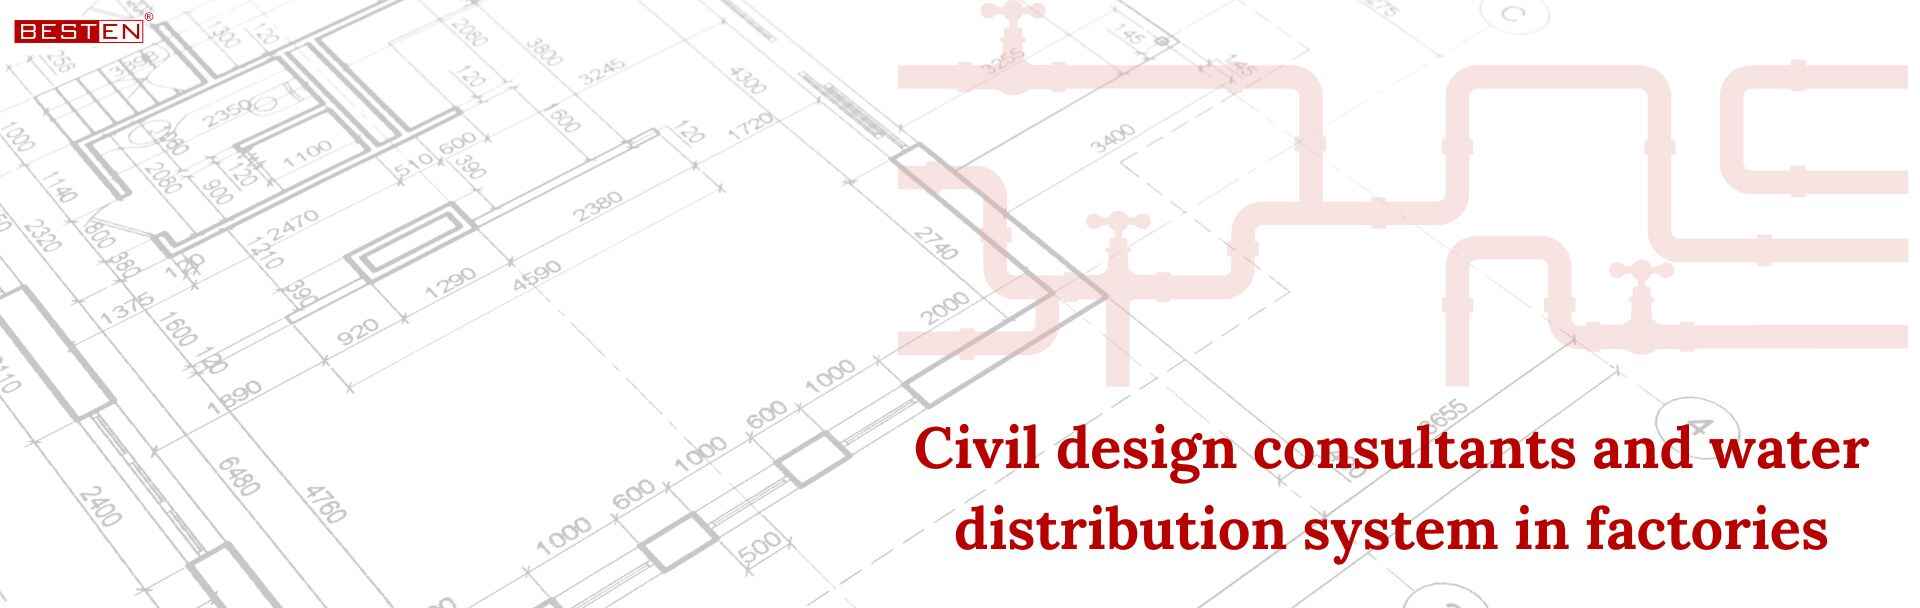 civil design consultants for factories